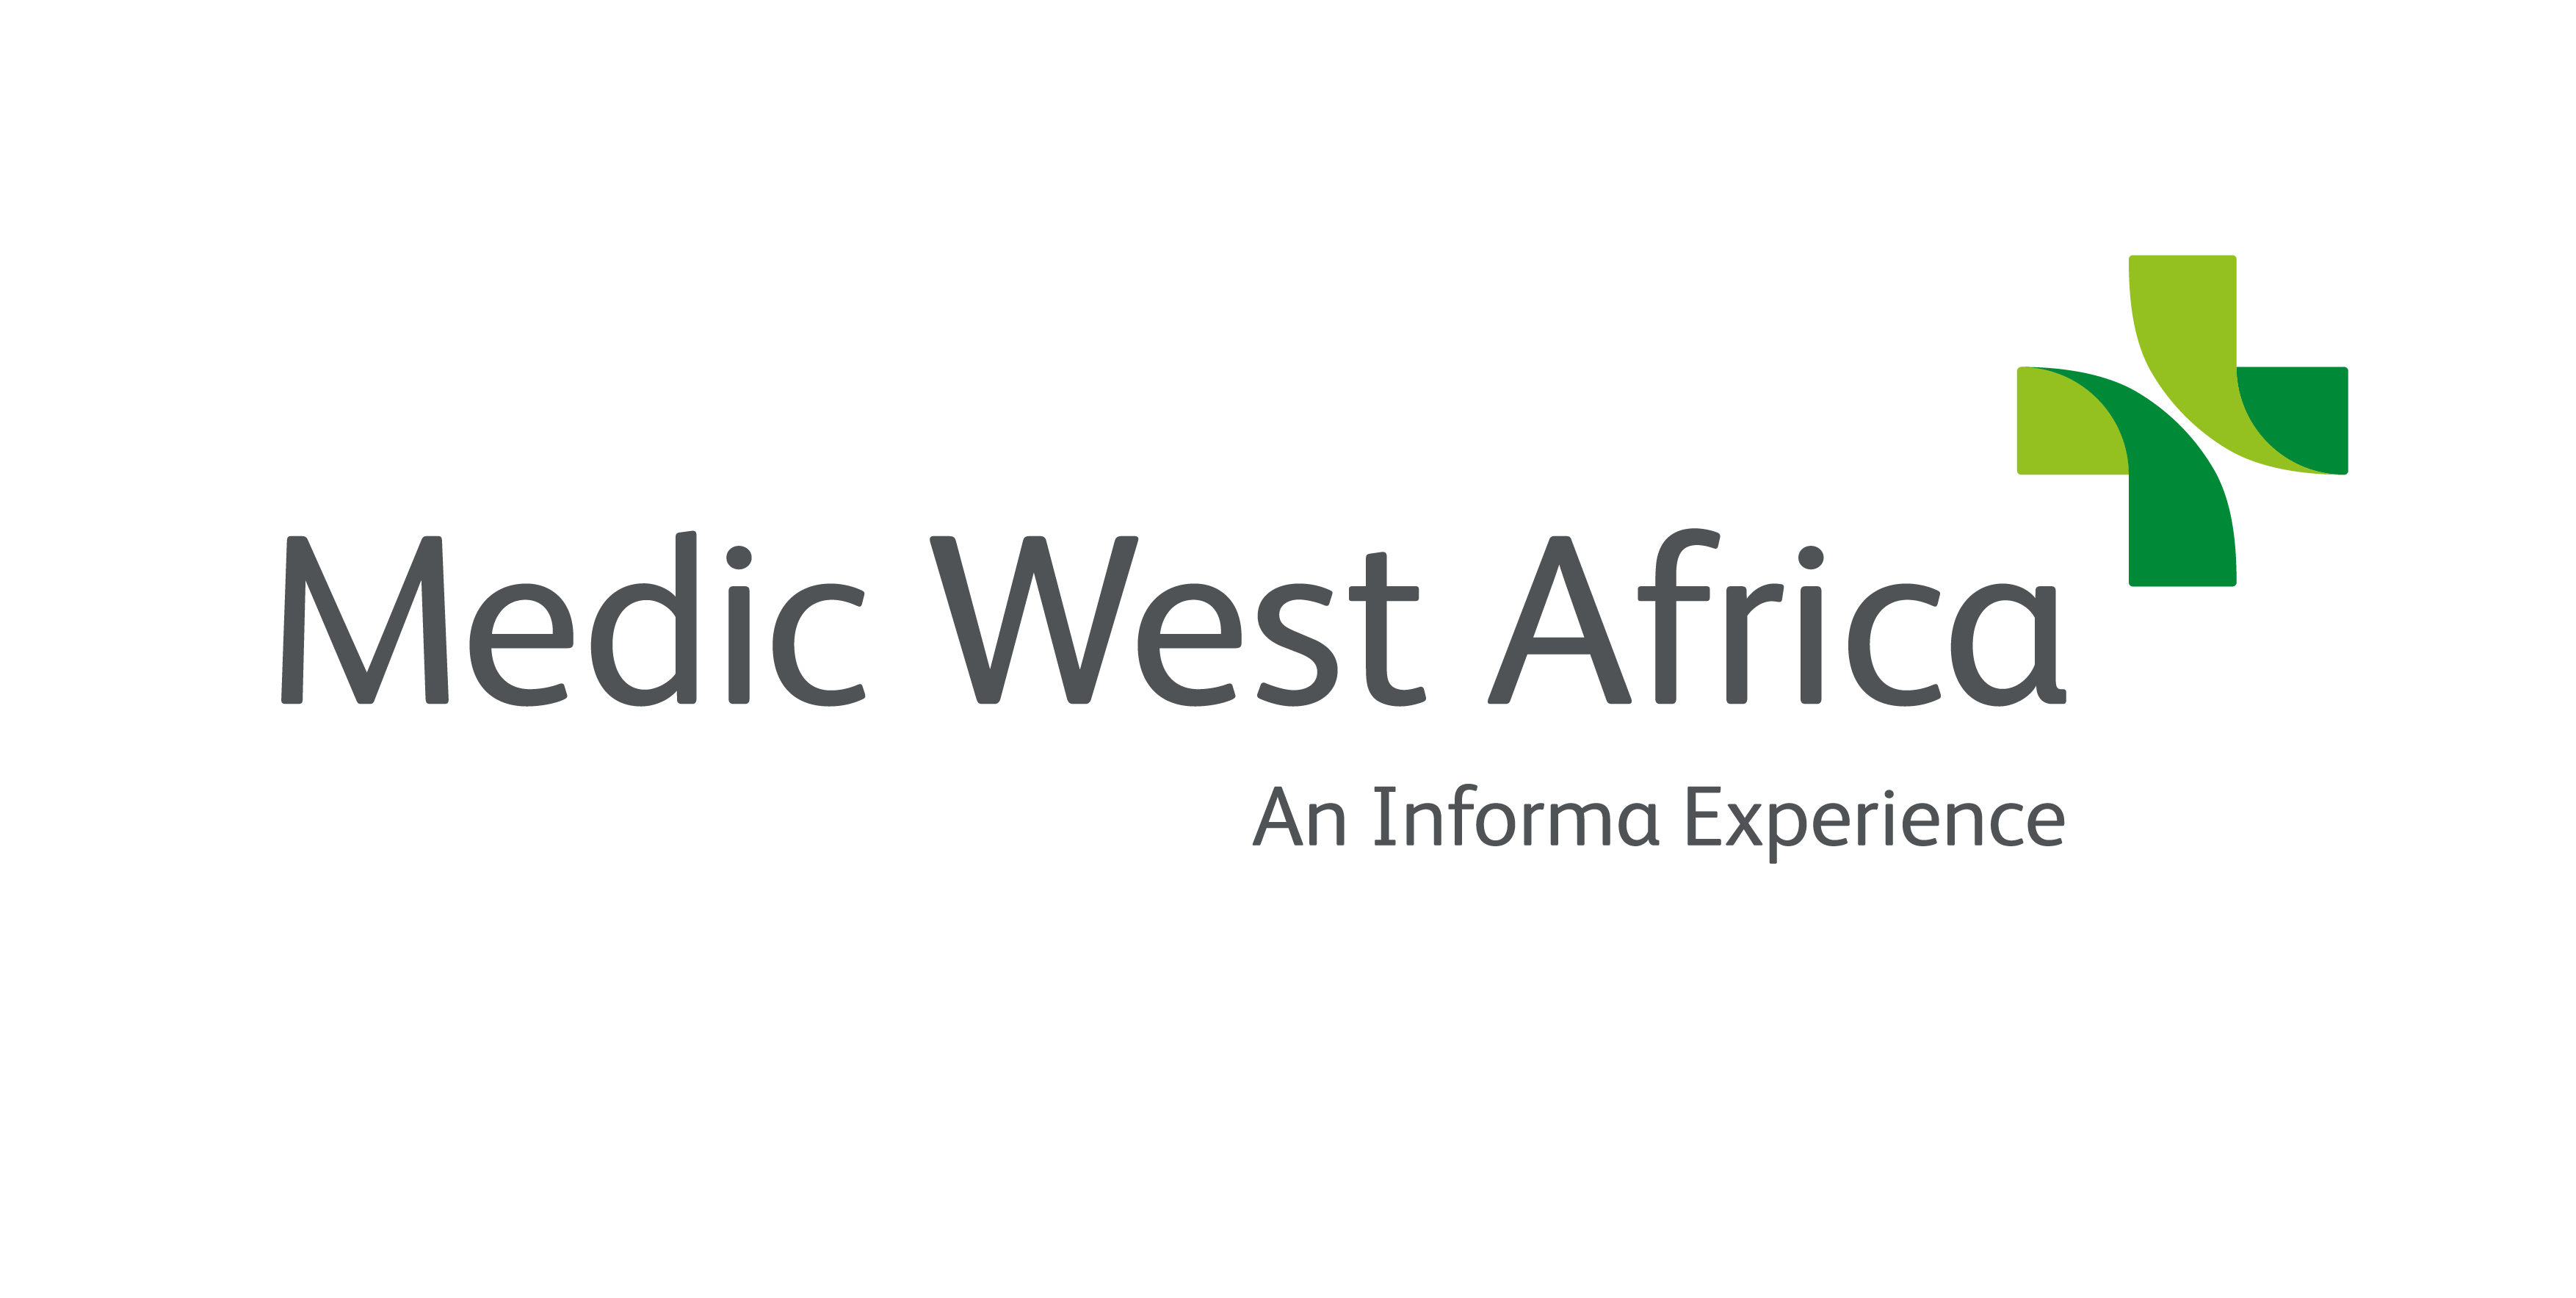 MEDIC WEST AFRICA